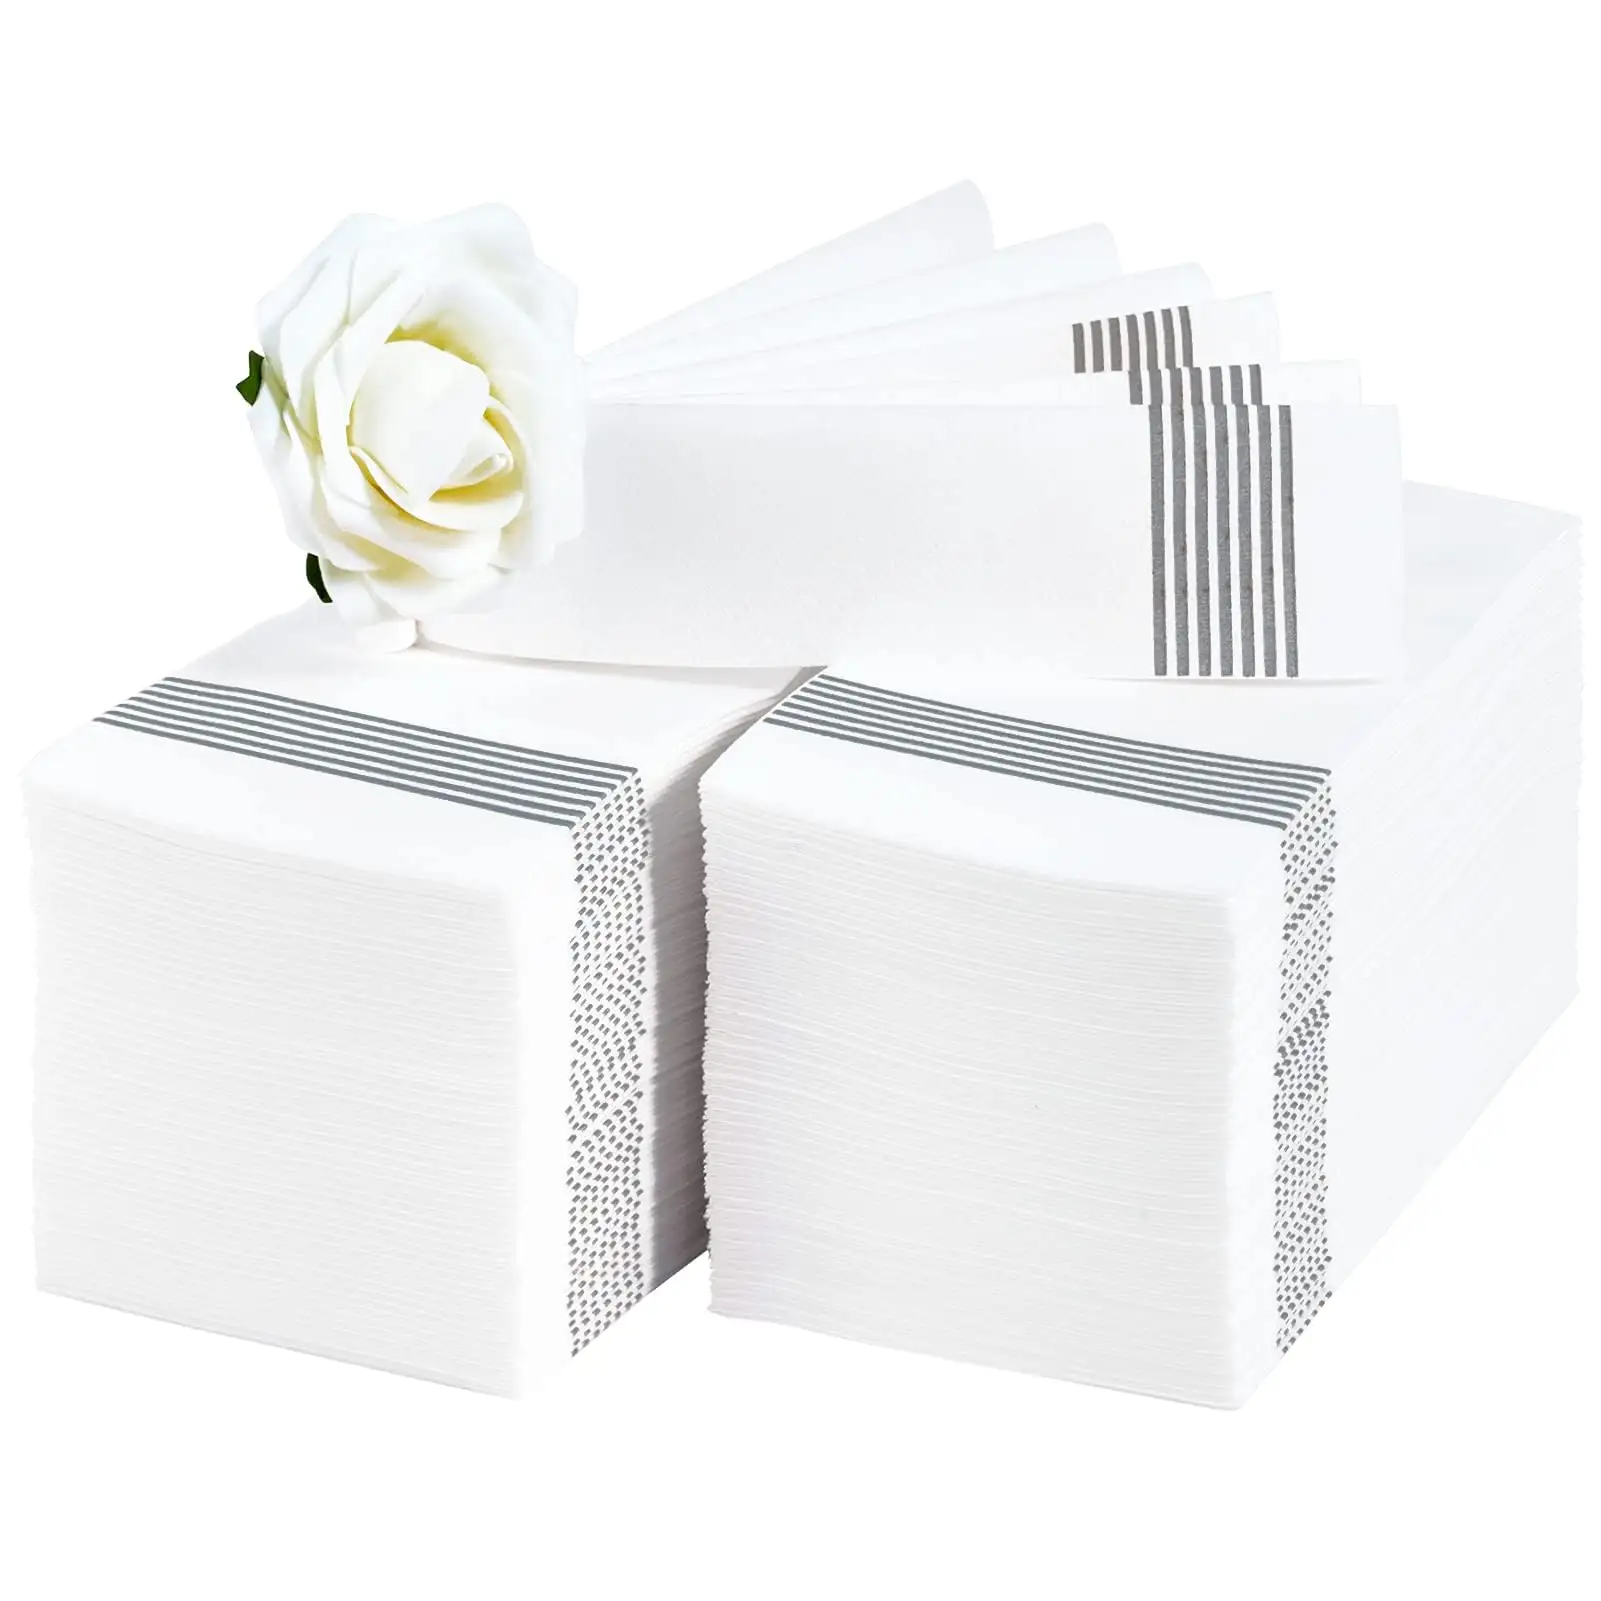 Toptan baskılı 100 adet tek kullanımlık kağıt peçeteler akşam yemeği çiçek kağıt peçete masa için